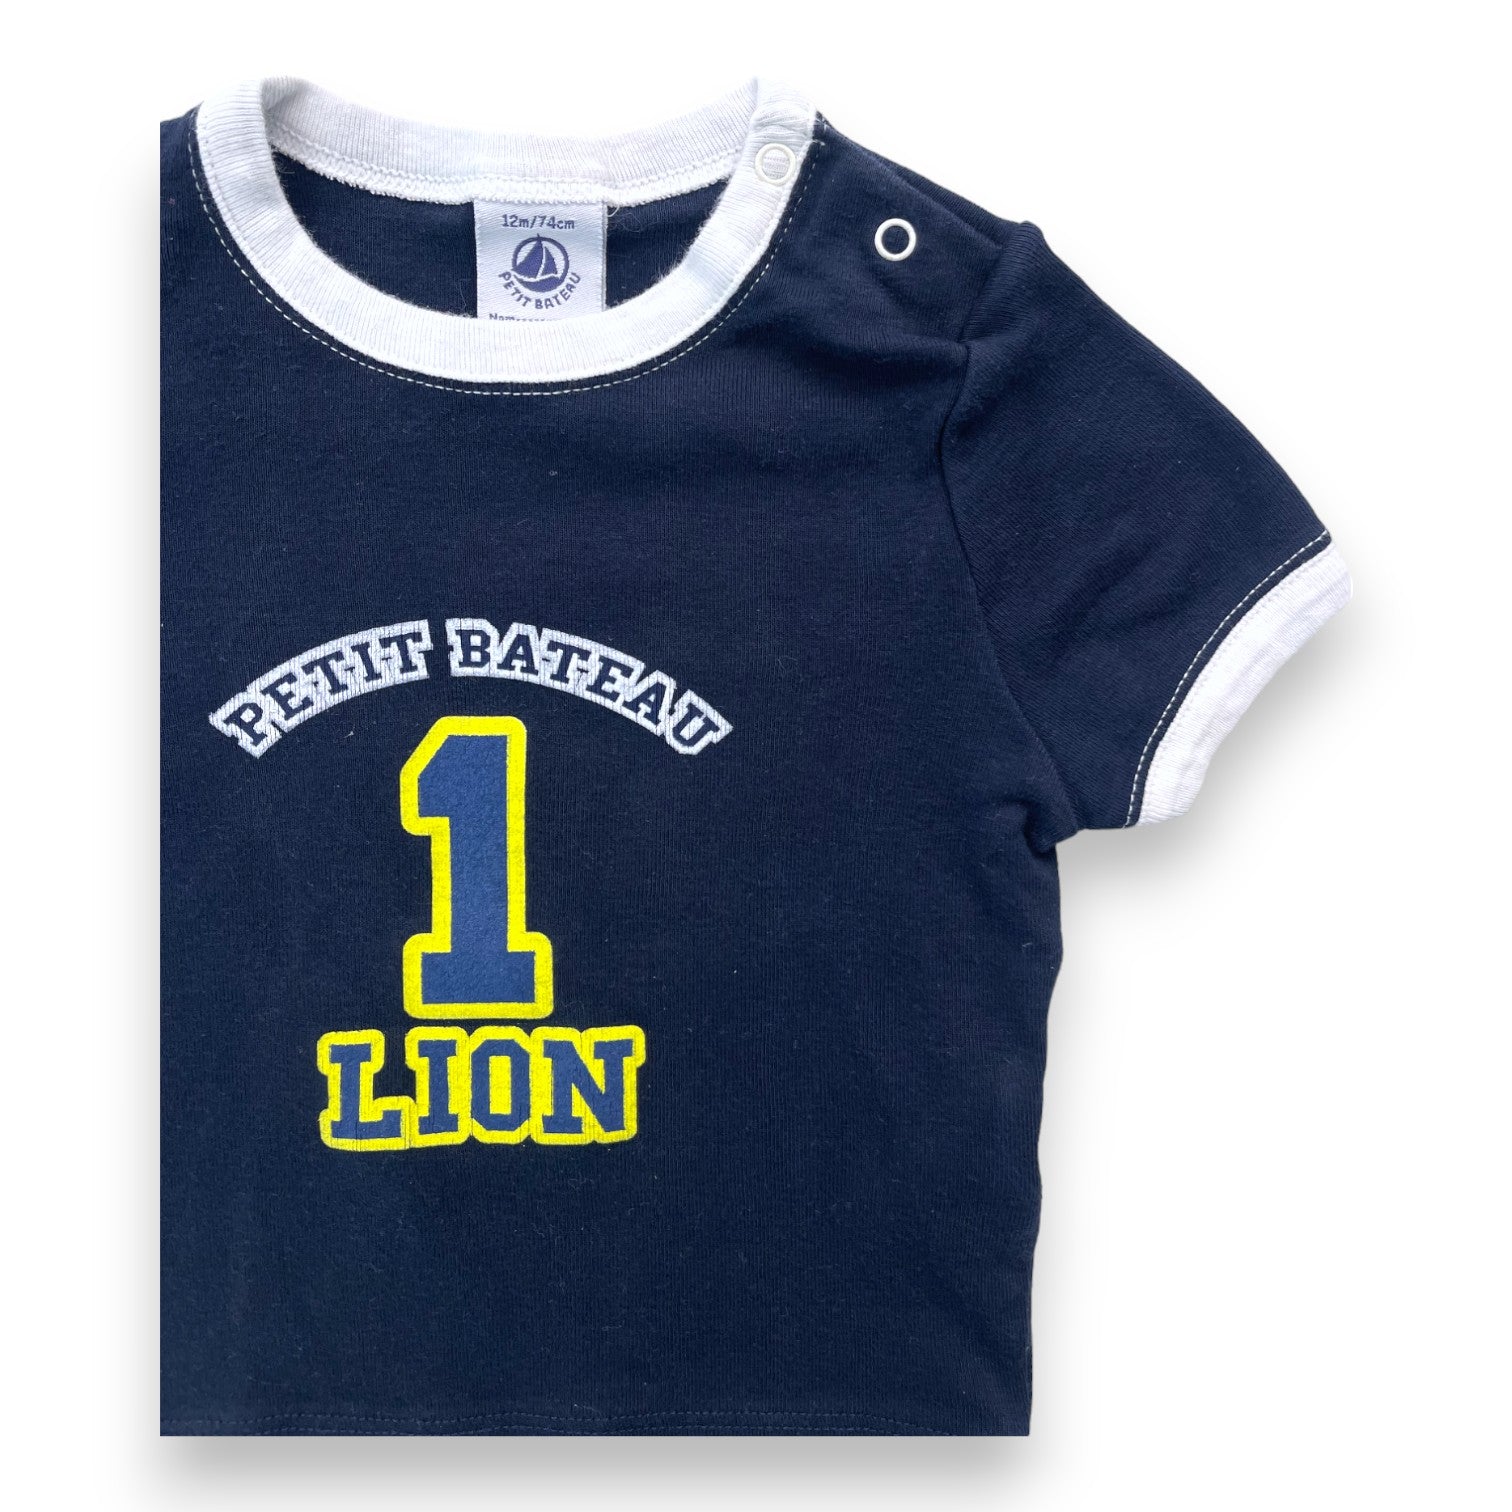 PETIT BATEAU - T shirt bleu marine "1 lion" - 12 mois